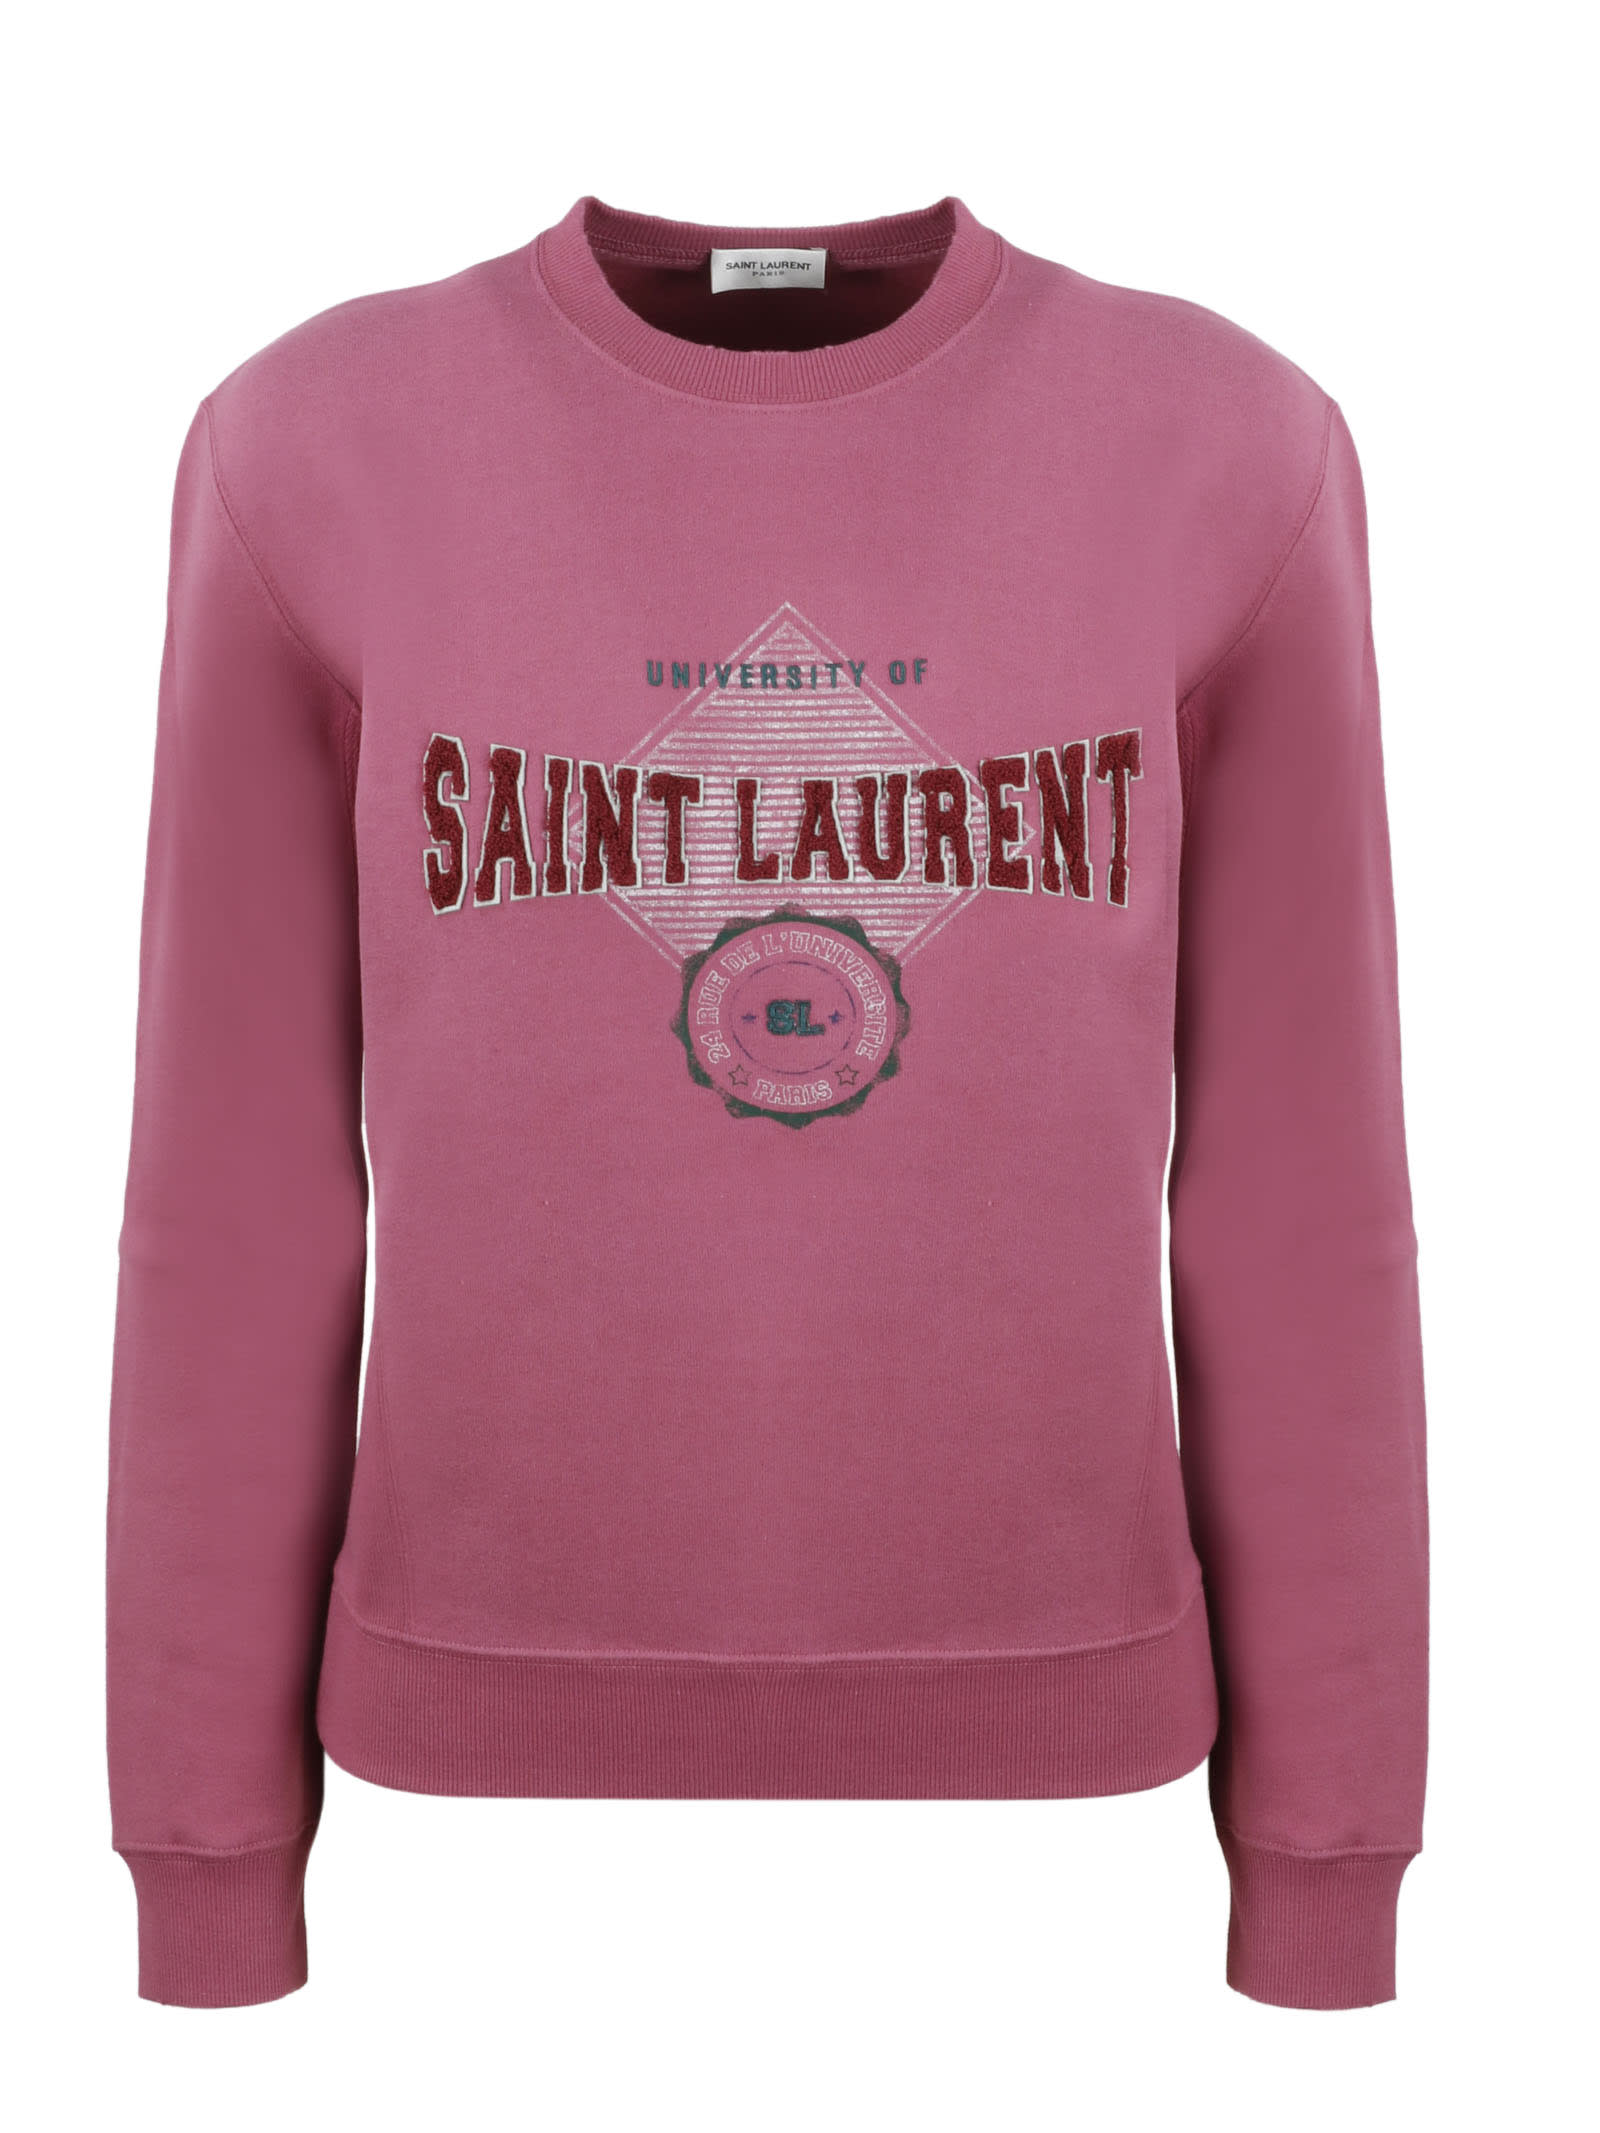 Saint Laurent University Of Sweatshirt